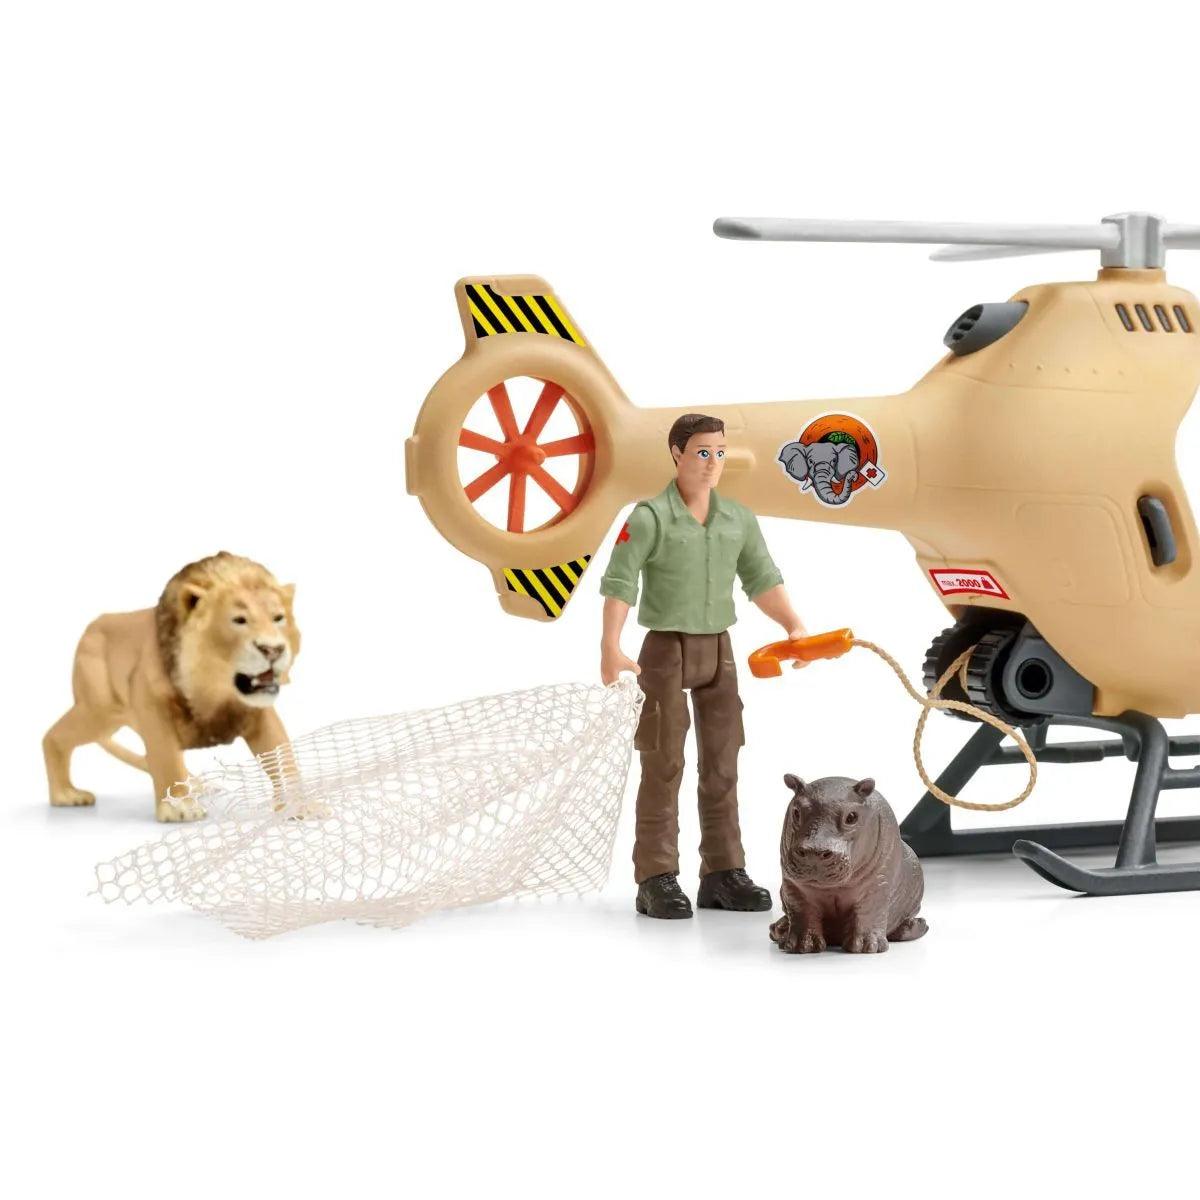 Hélicoptère pour sauvetage d’animaux - La Ribouldingue